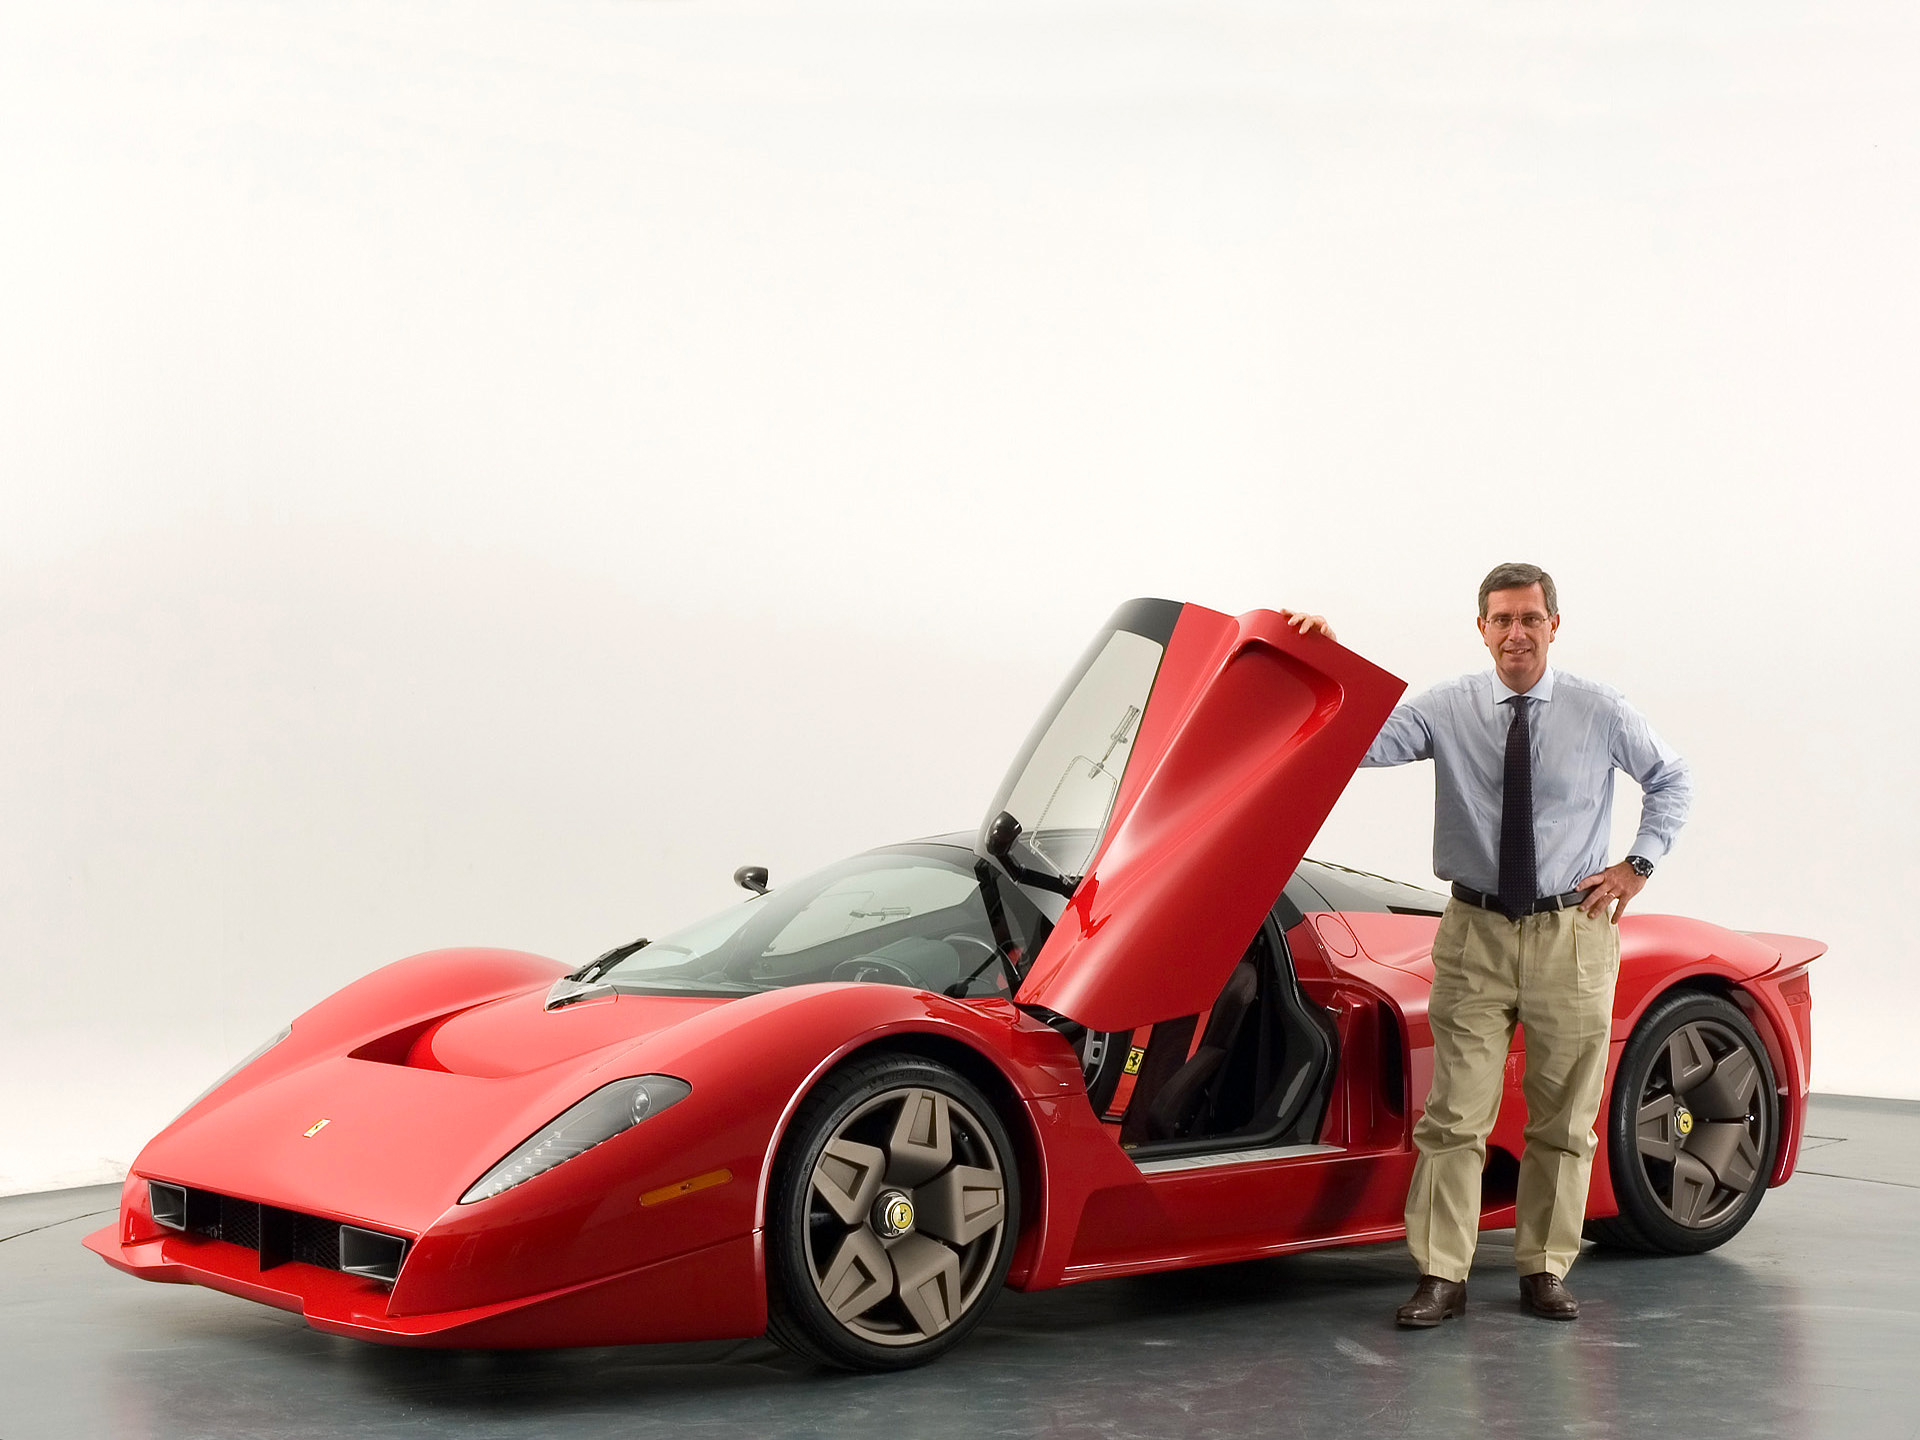 Descarga gratuita de fondo de pantalla para móvil de Concepto Ferrari Pininfarina P4/5, Ferrari, Vehículos.